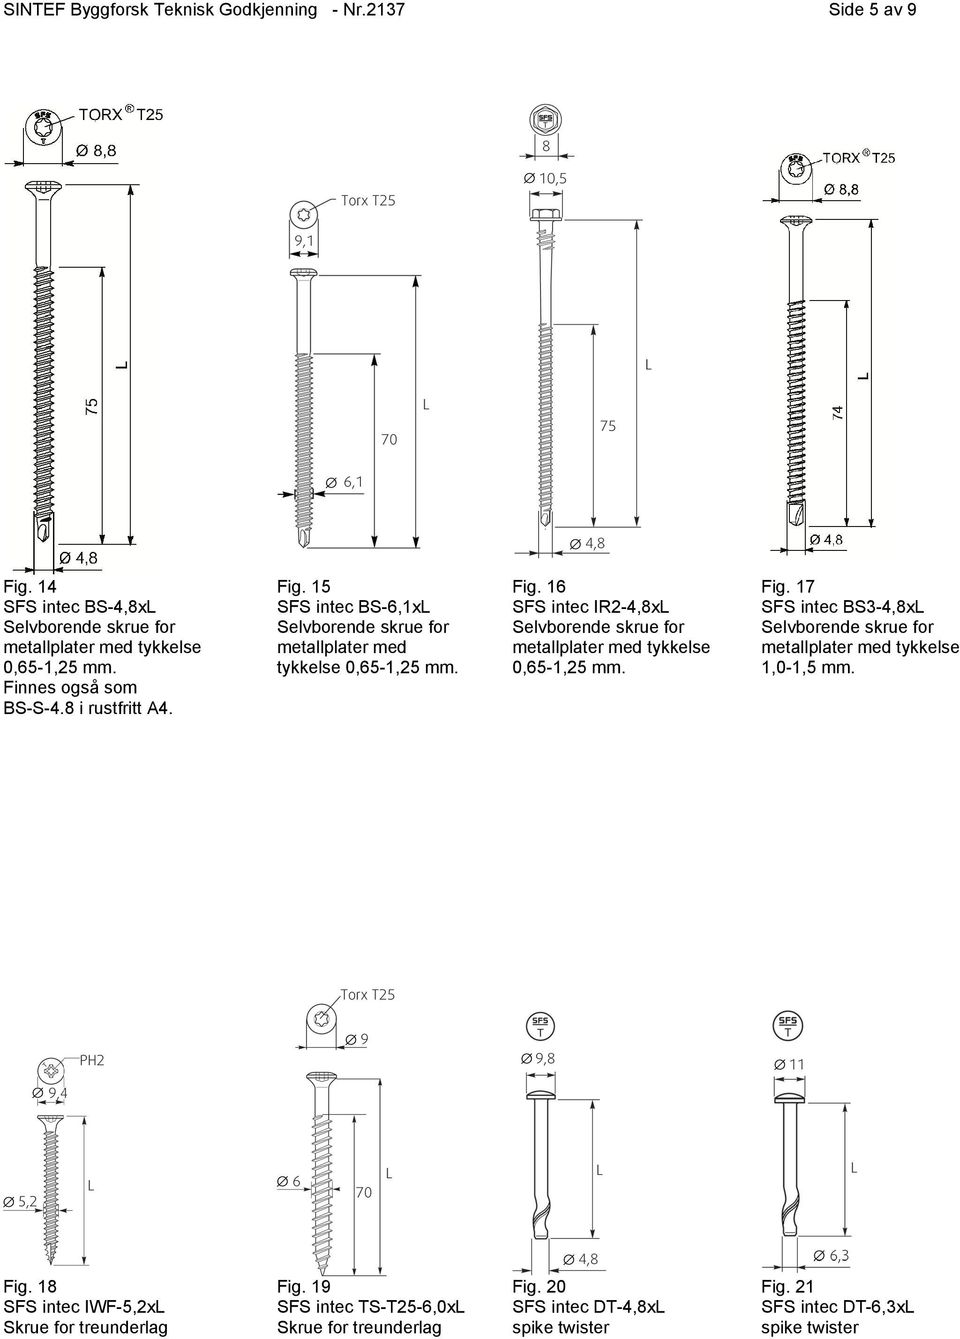 Fig. 17 BS3-4,8xL Selvborende skrue for metallplater med tykkelse 1,0-1,5 mm. Fig. 18 IWF-5,2xL Skrue for treunderlag Fig.